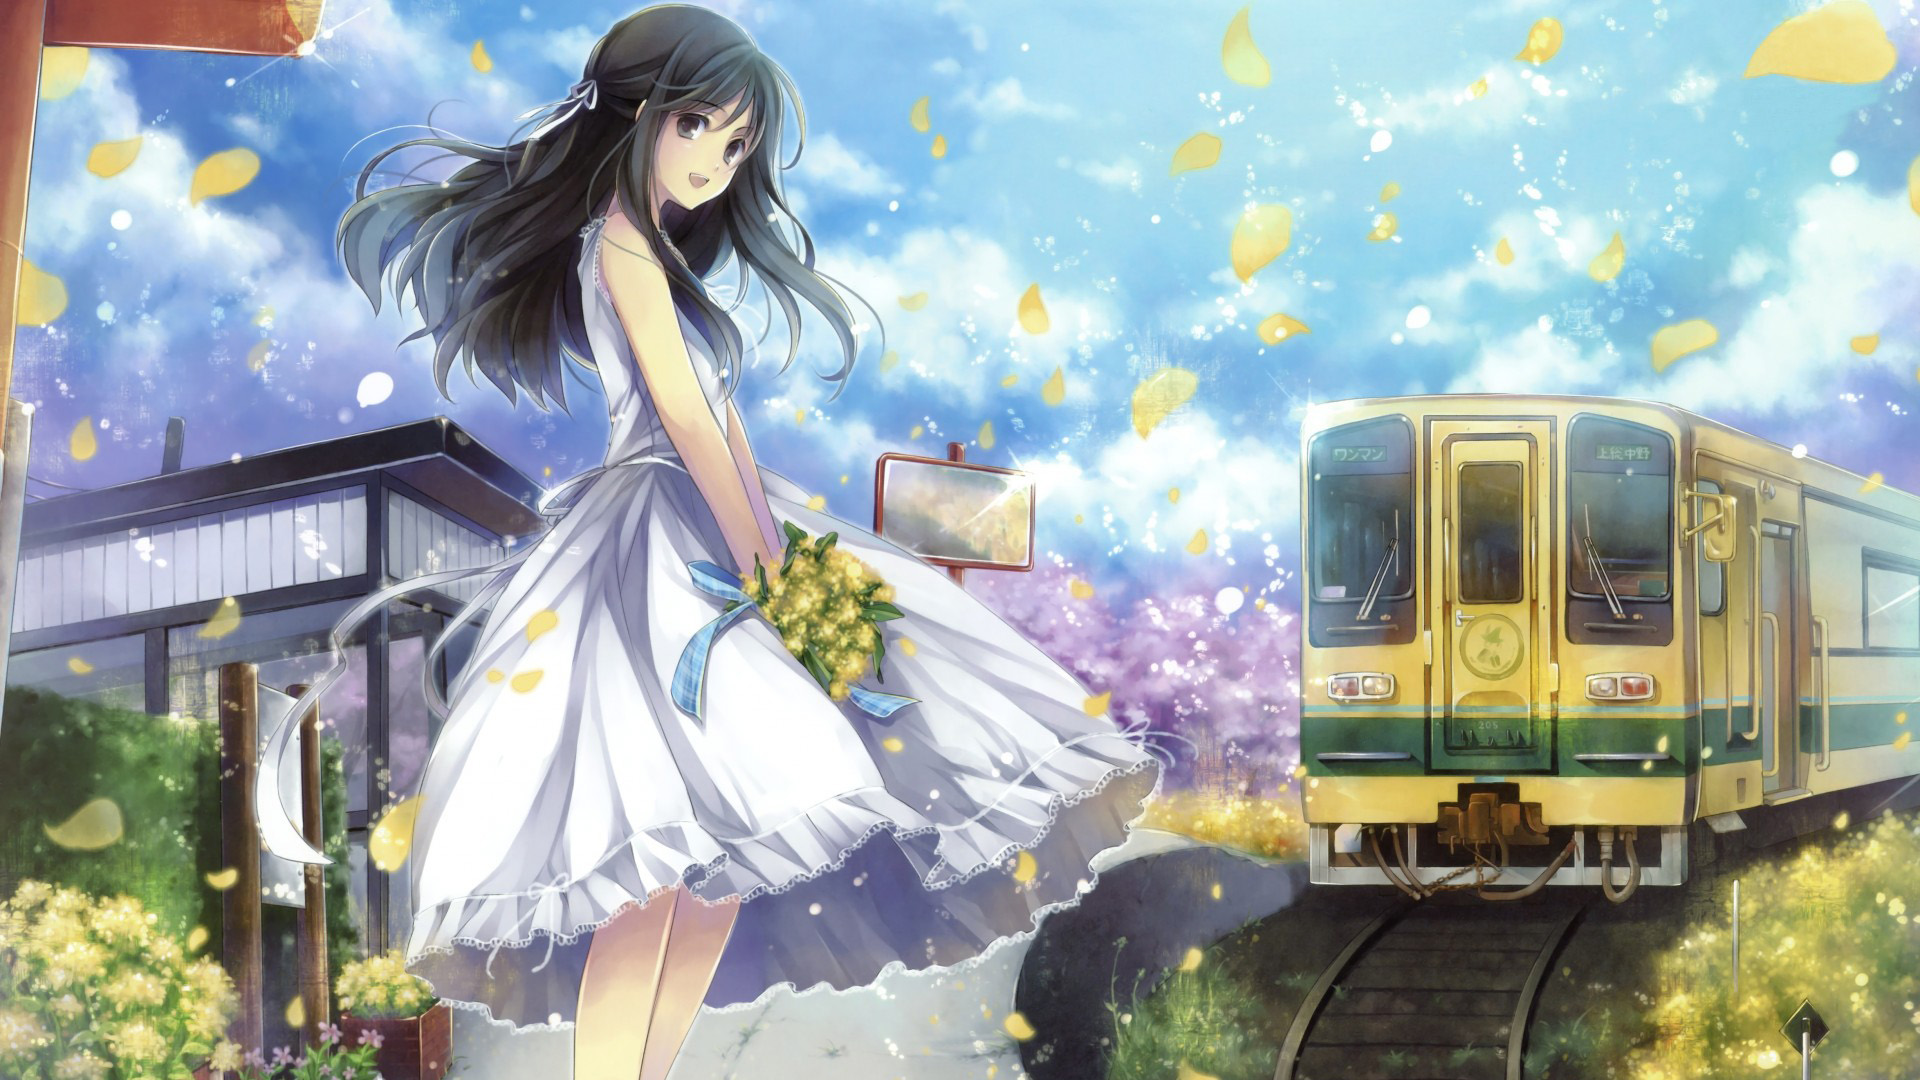 女孩,长头发,火车,花束图片,好看动漫壁纸